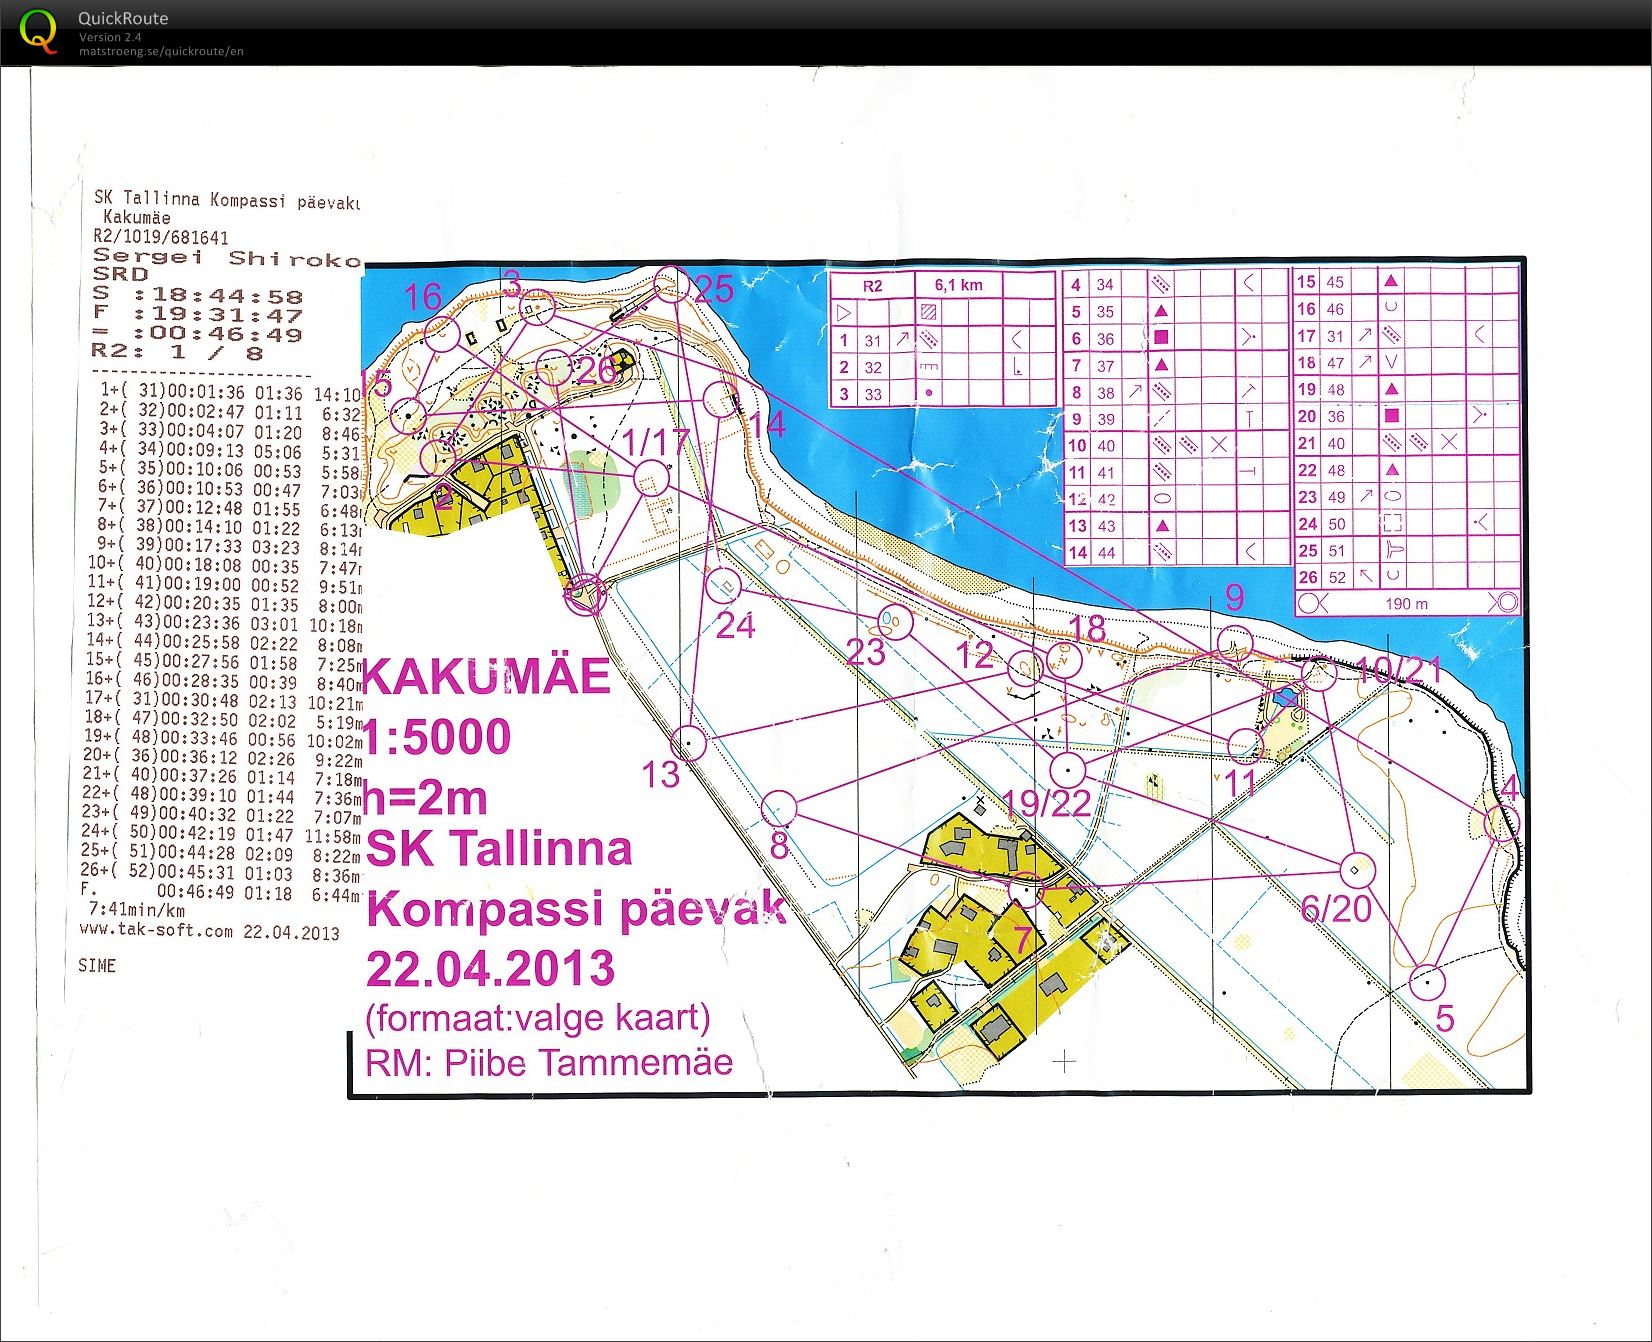 SK Tallinna Kompassi päevak (22/04/2013)